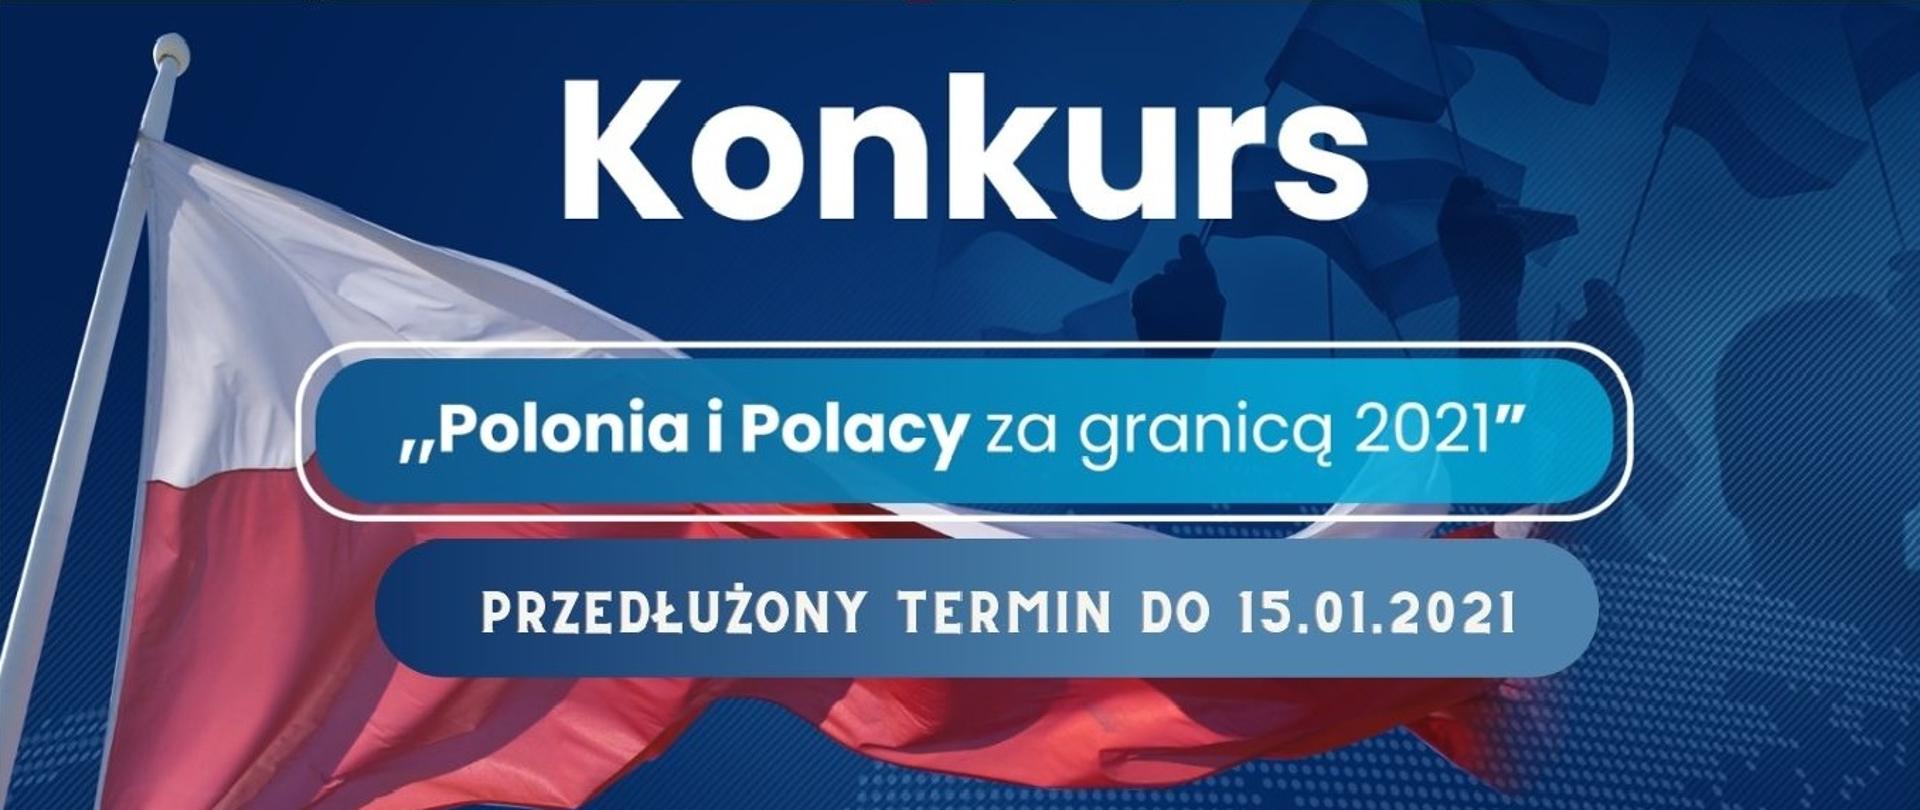 Przedłużony termin konkursu Polonia i Polacy 2021